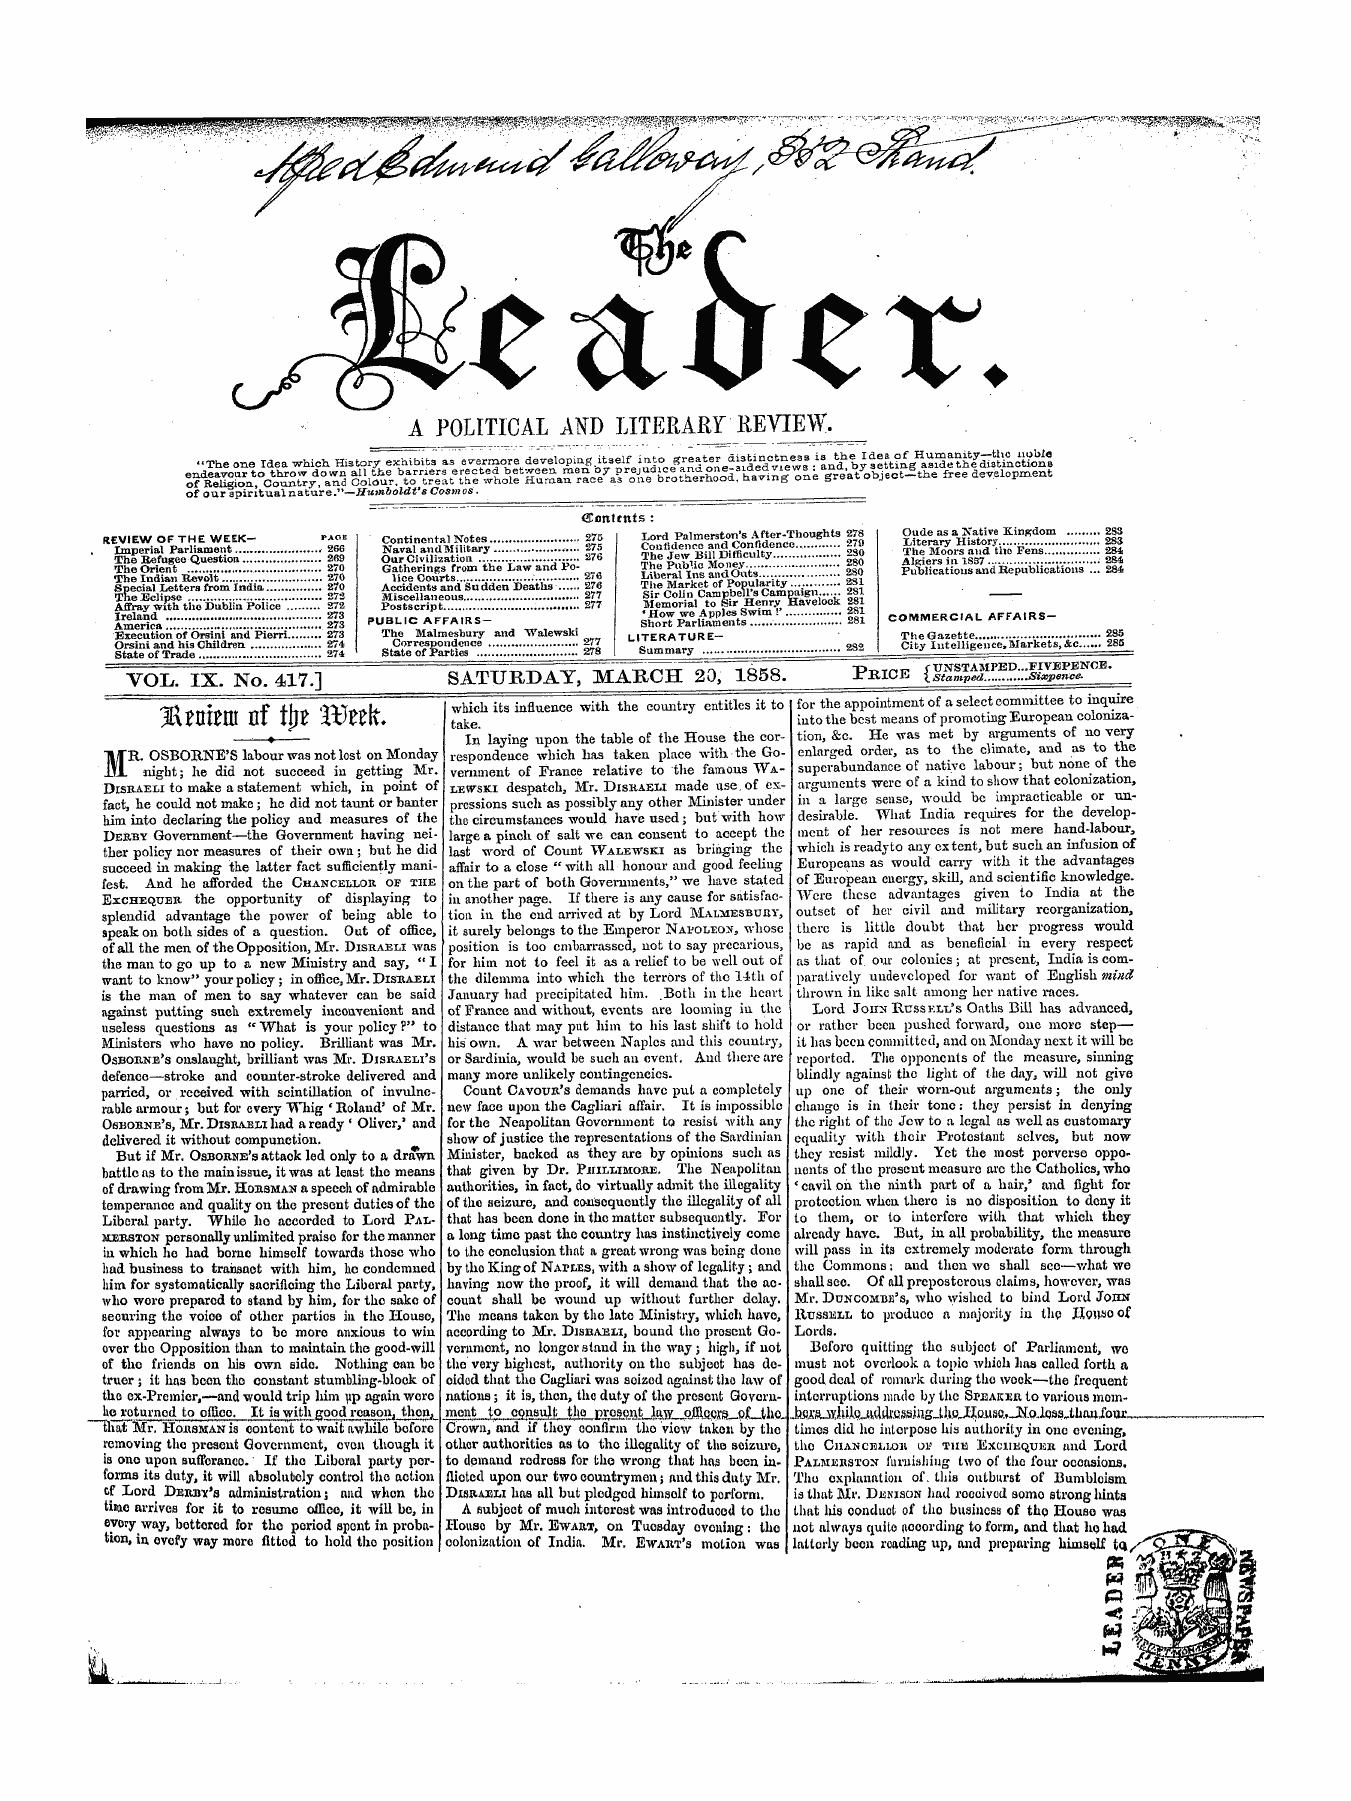 Leader (1850-1860): jS F Y, 1st edition - 3rraenr Of Tttf Wnk.